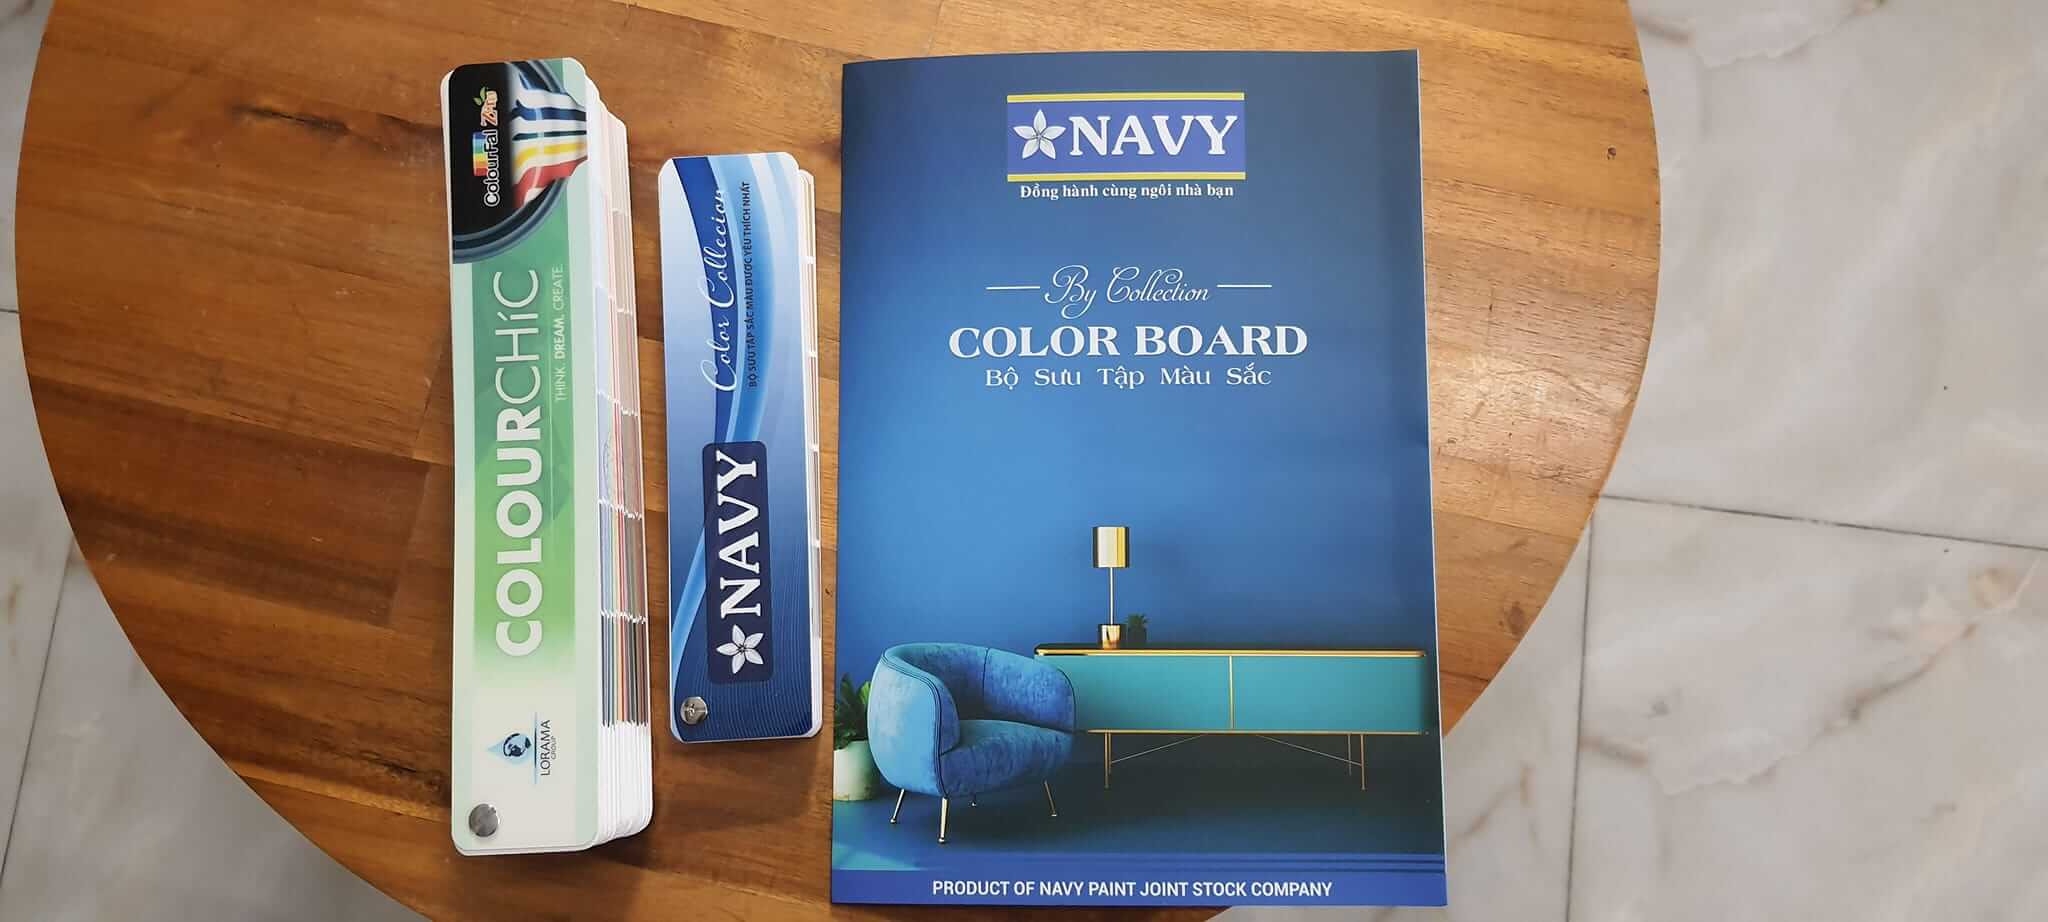 Bảng màu sơn Navy